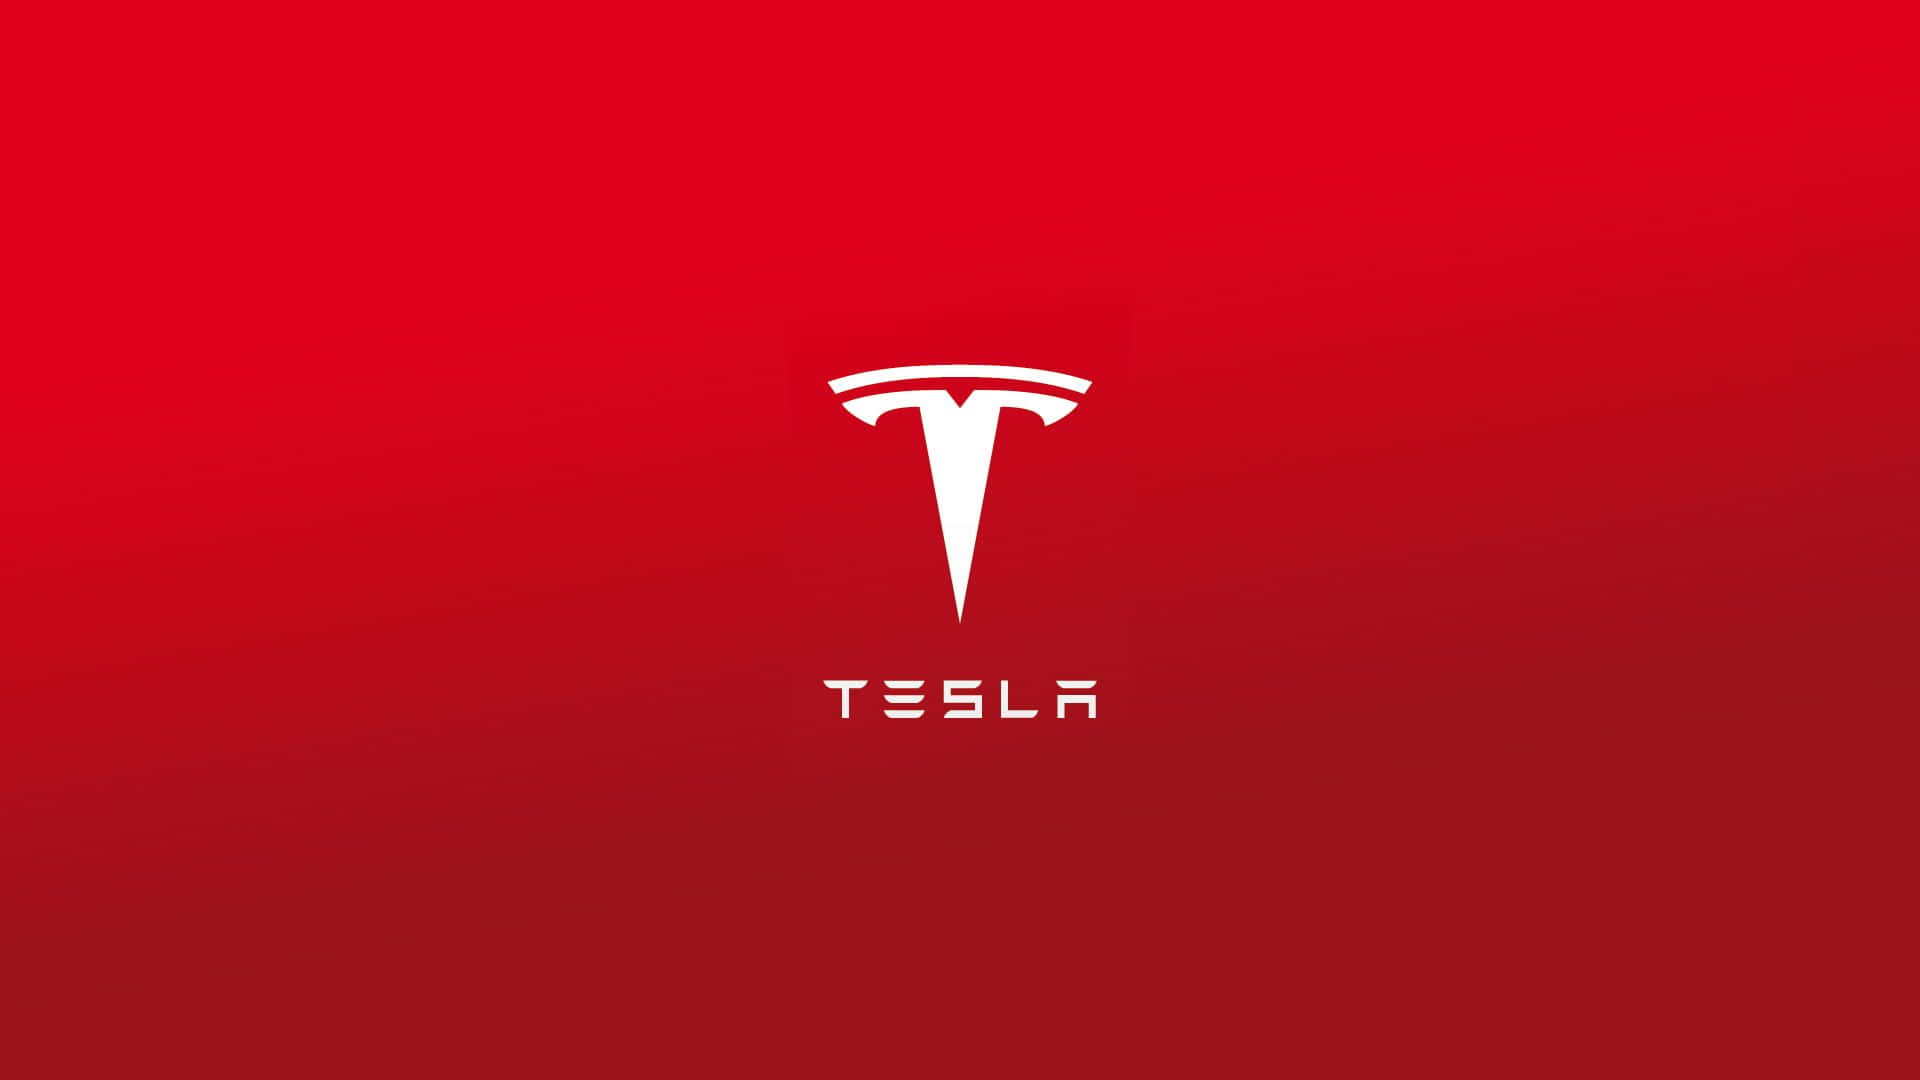 Losfans De Tesla Celebran El Futuro De Los Vehículos Eléctricos.